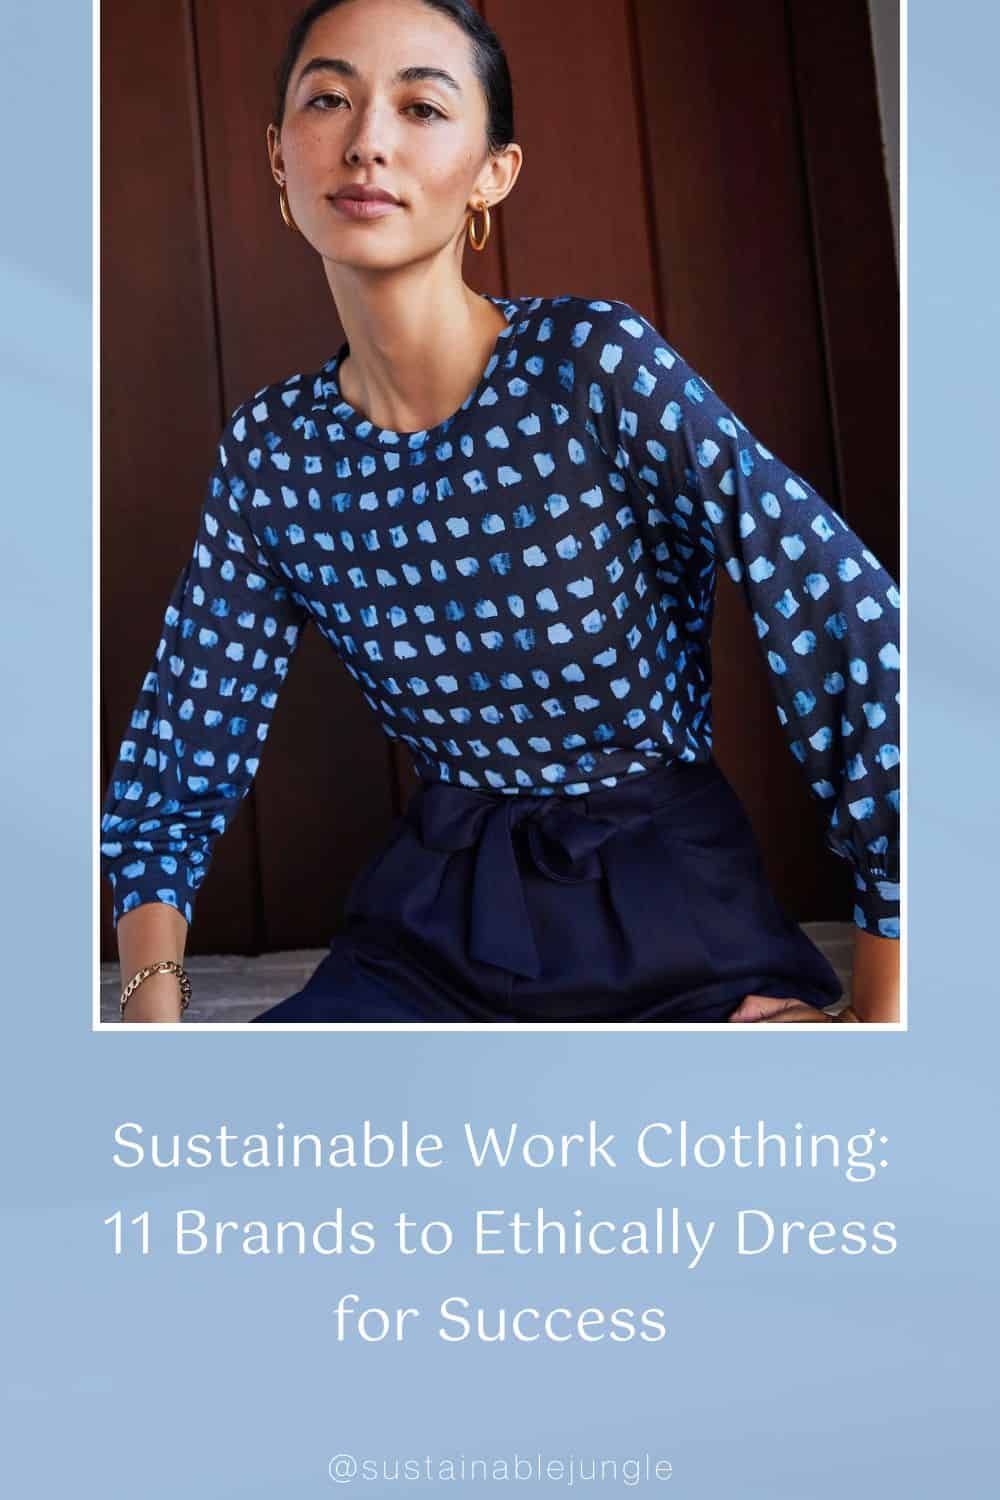 可持续工作服:11个品牌以道德着装获得成功#可持续工作服#可持续工作服#可持续工作服#可持续工作服#道德工作服#可持续丛林图片由M.M.LaFleur拍摄